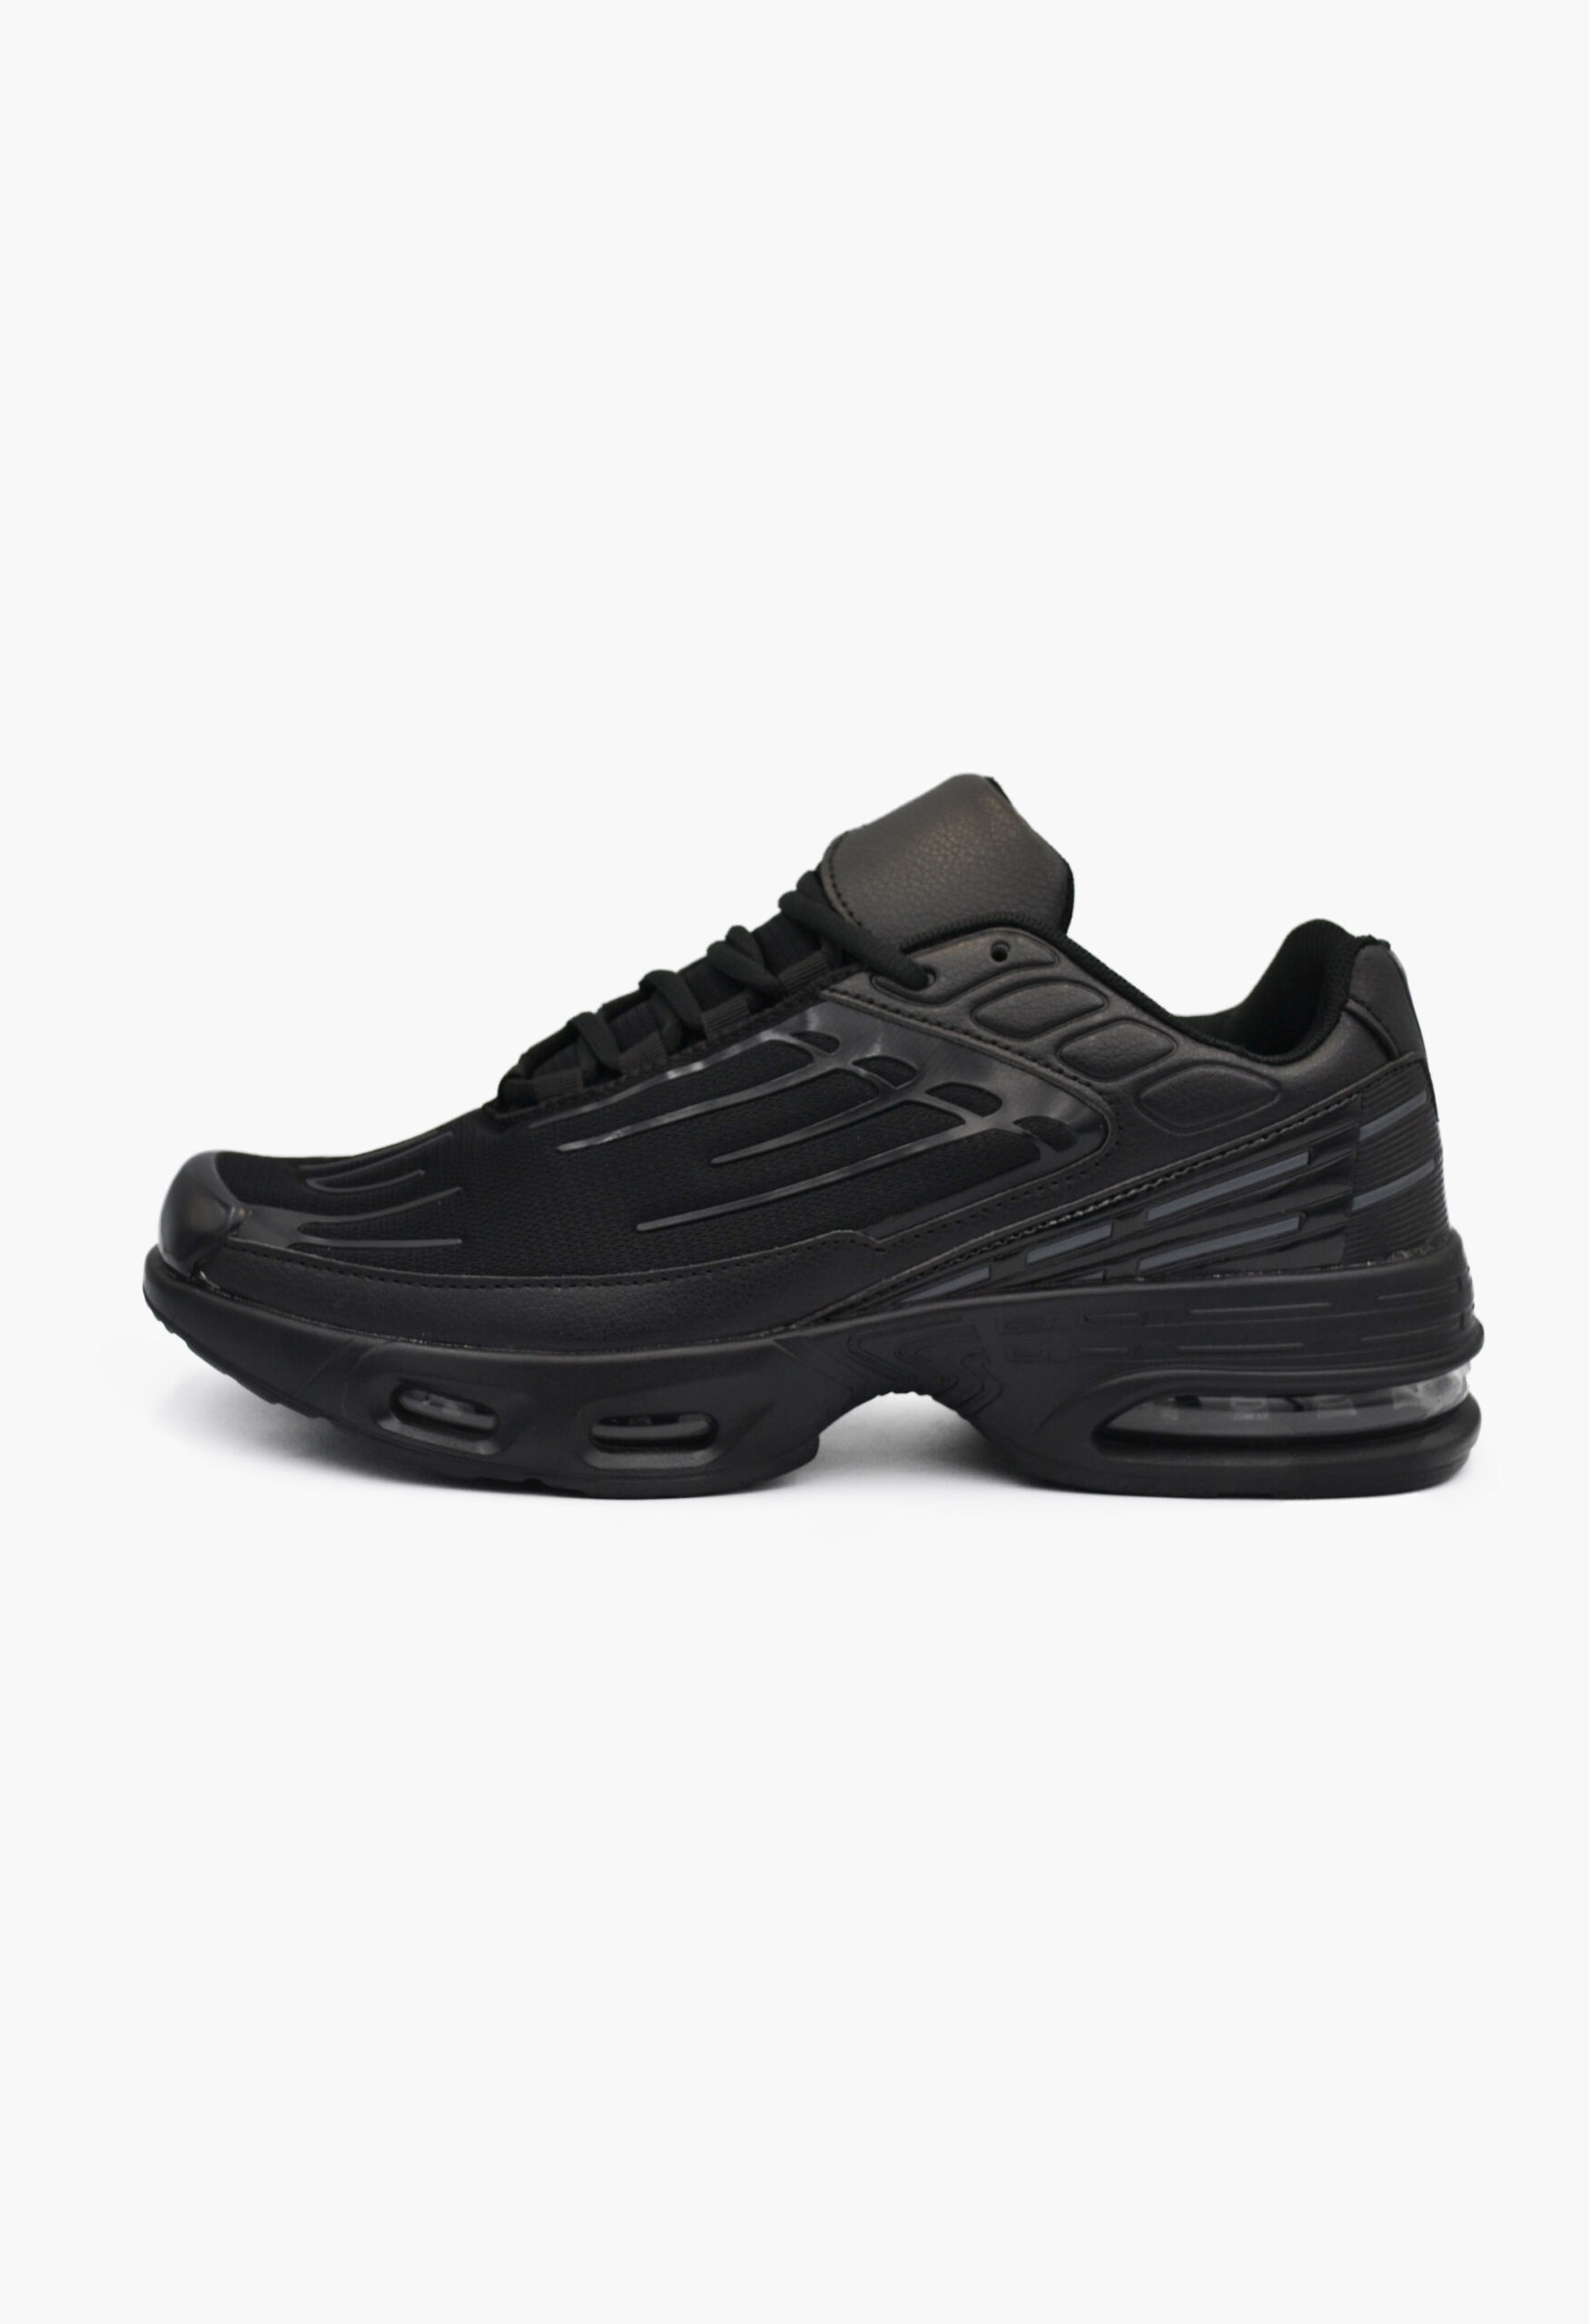 Ανδρικά Αθλητικά Παπούτσια για Τρέξιμο Μαύρα / TN505-black ΑΝΔΡΙΚΑ ΠΑΠΟΥΤΣΙΑ joya.gr